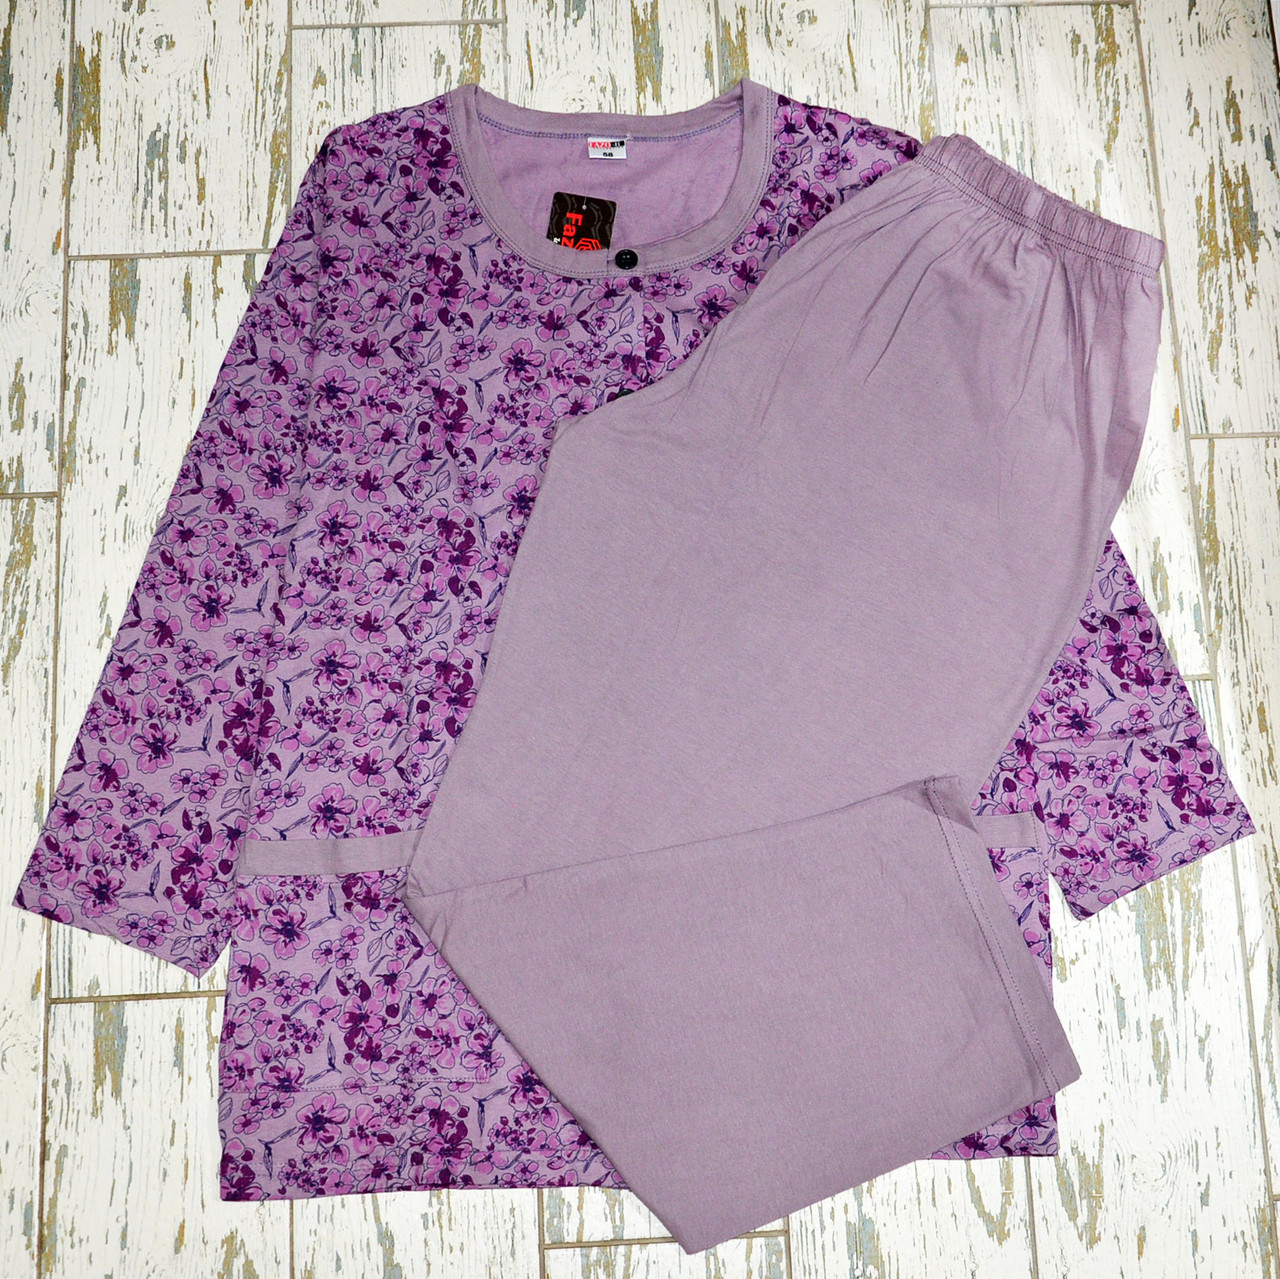 Великі розміри 58. Фіолетова жіноча піжама, 100% бавовна, одяг для дому та сну, батал